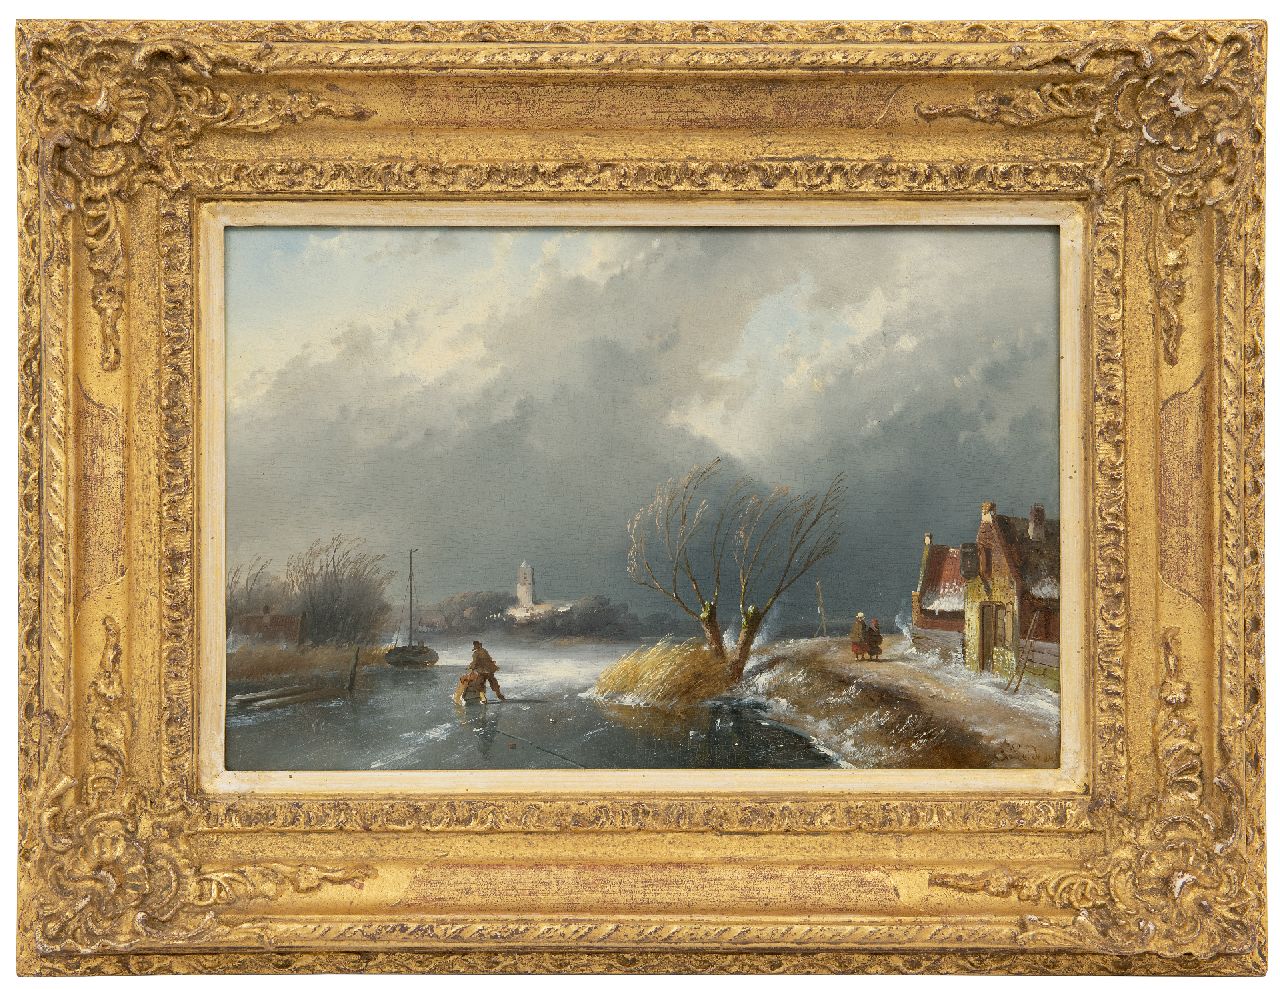 Leickert C.H.J.  | 'Charles' Henri Joseph Leickert | Schilderijen te koop aangeboden | Winterlandschap met opkomende naderende sneeuwstorm, olieverf op paneel 23,0 x 34,9 cm, gesigneerd rechtsonder